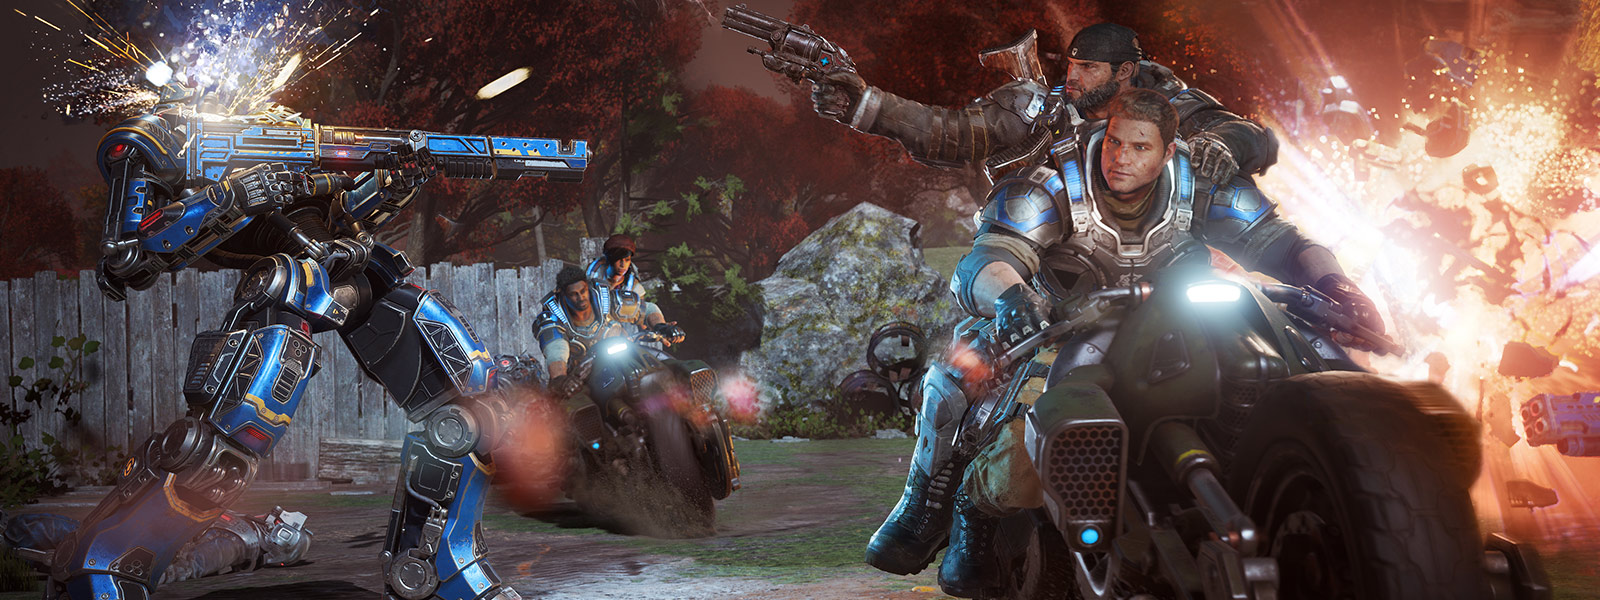 JD Fenix et ses amis utilisent leurs armes et conduisent des motos pendant une bataille dans le jeu Gears of War 4